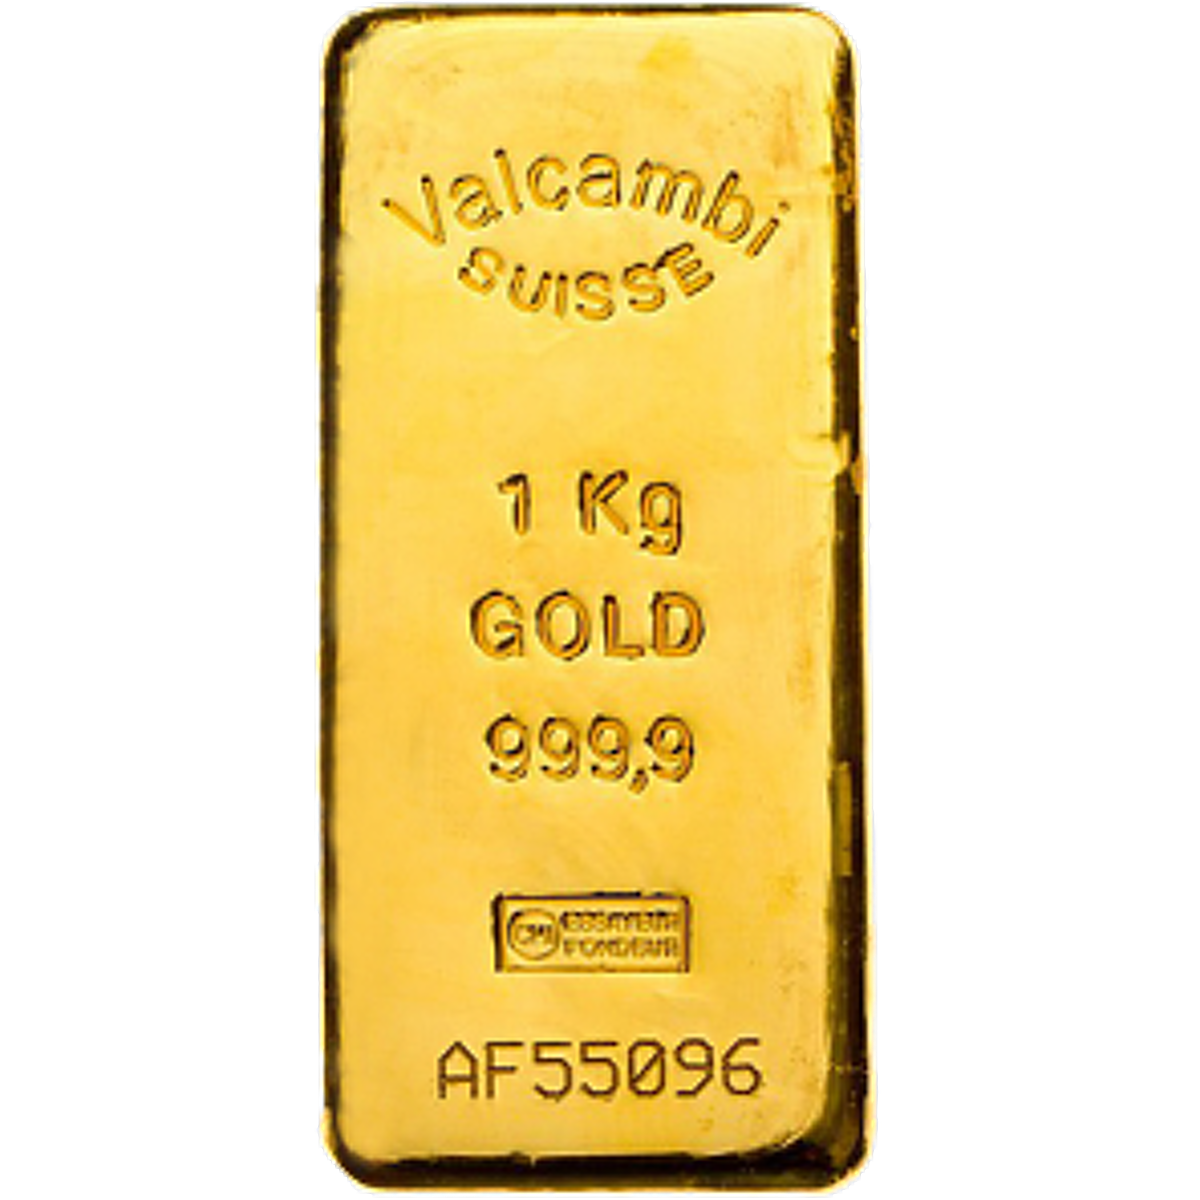 5 5 килограммов золота. 20 Килограммовый слиток золота. 1 Кг золота. Слиток золота 1 кг. Вес золотого слитка.